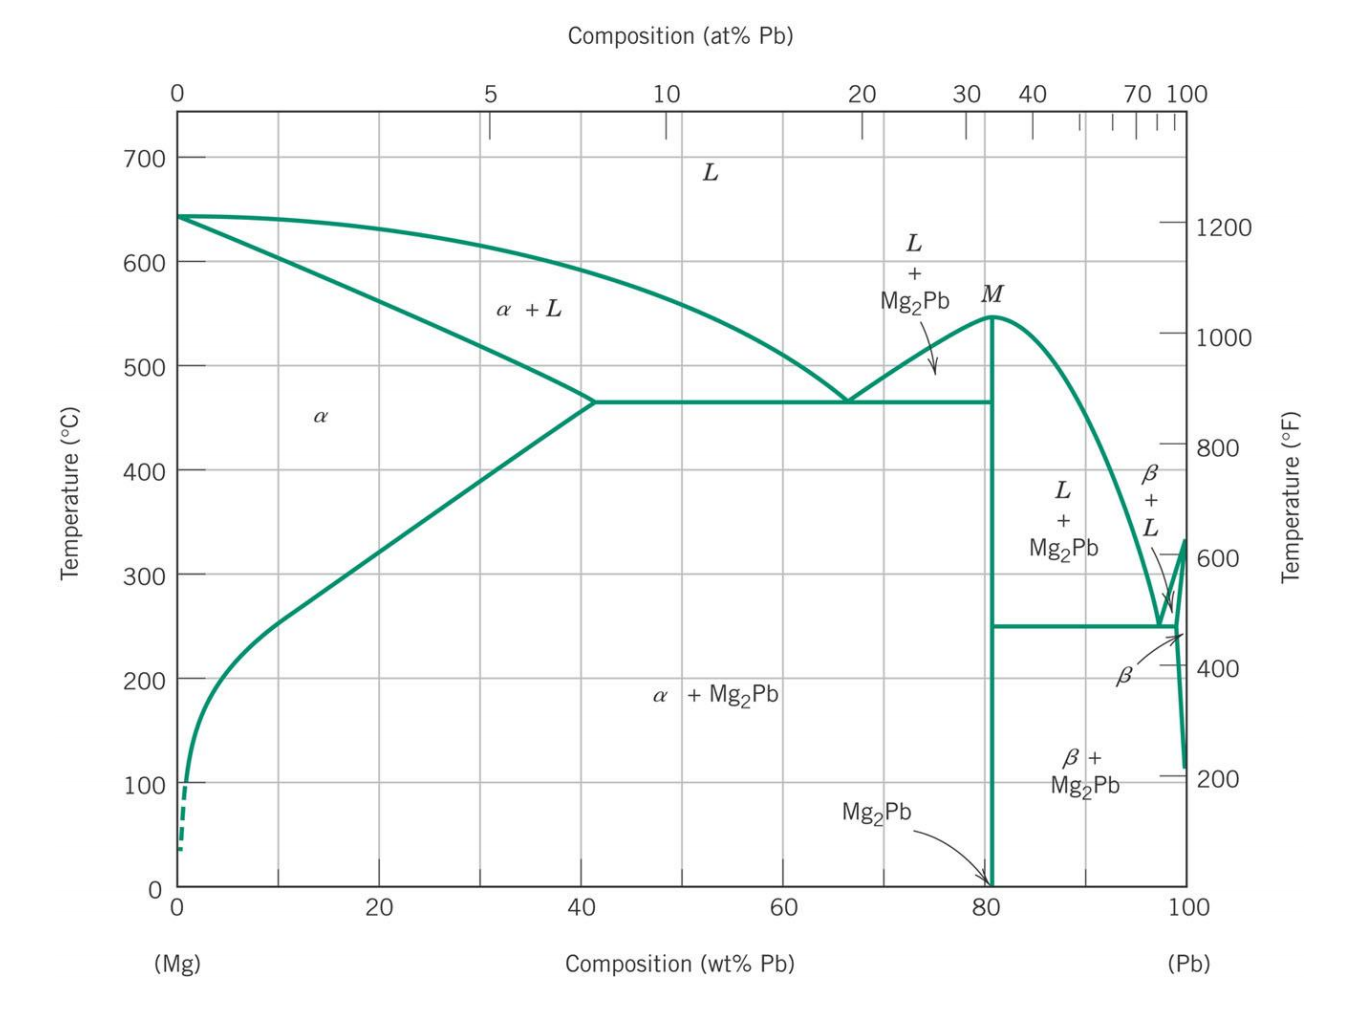 [DIAGRAM] Lead Magnesium Phase Diagram